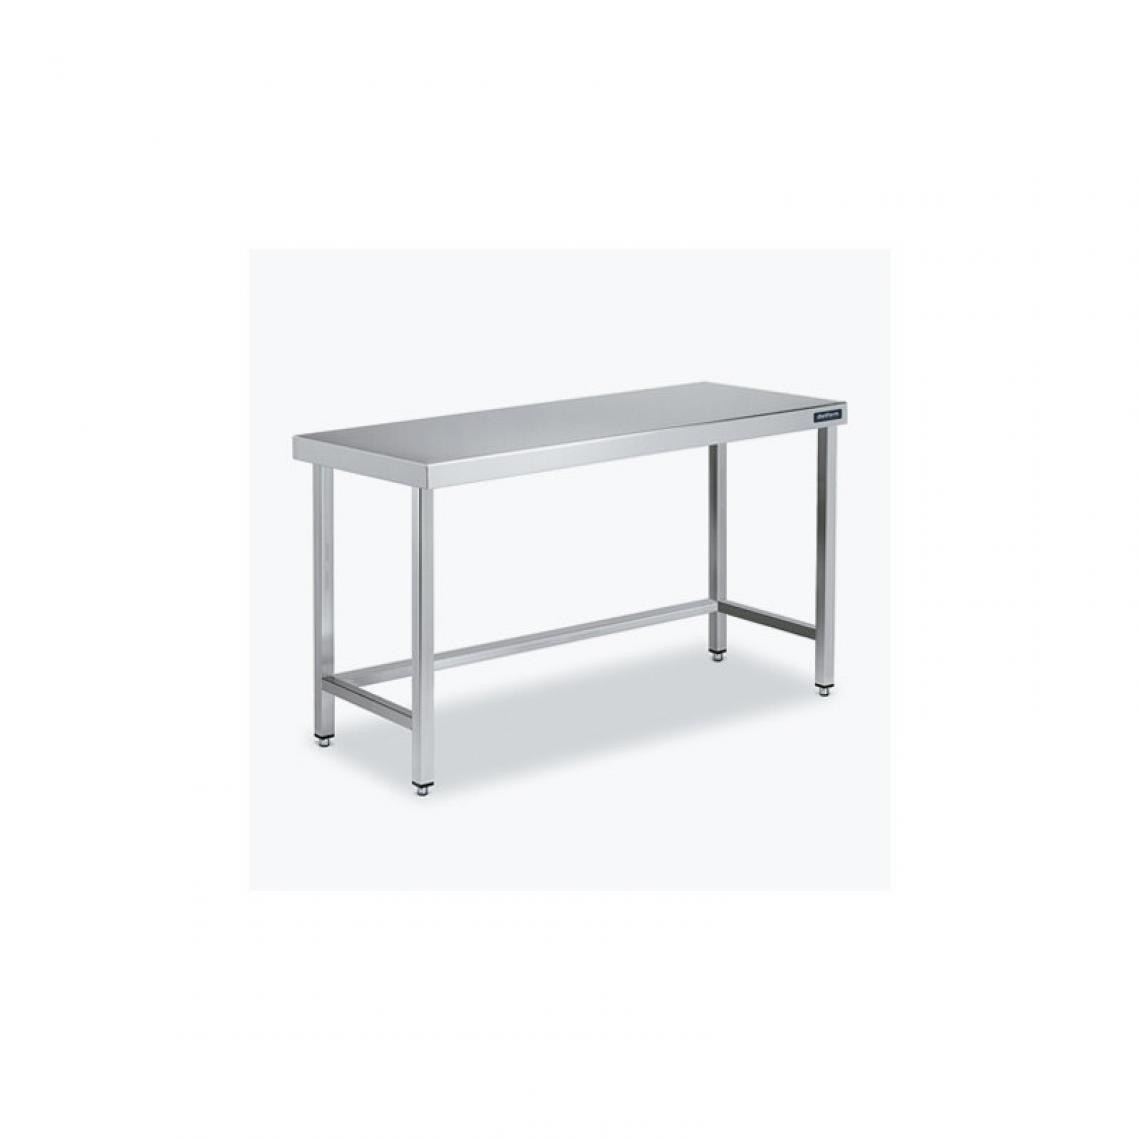 DISTFORM - Table Centrale 600x900 avec Renforts - Distform - Inox 18/10800x900x850mm - Tables à manger